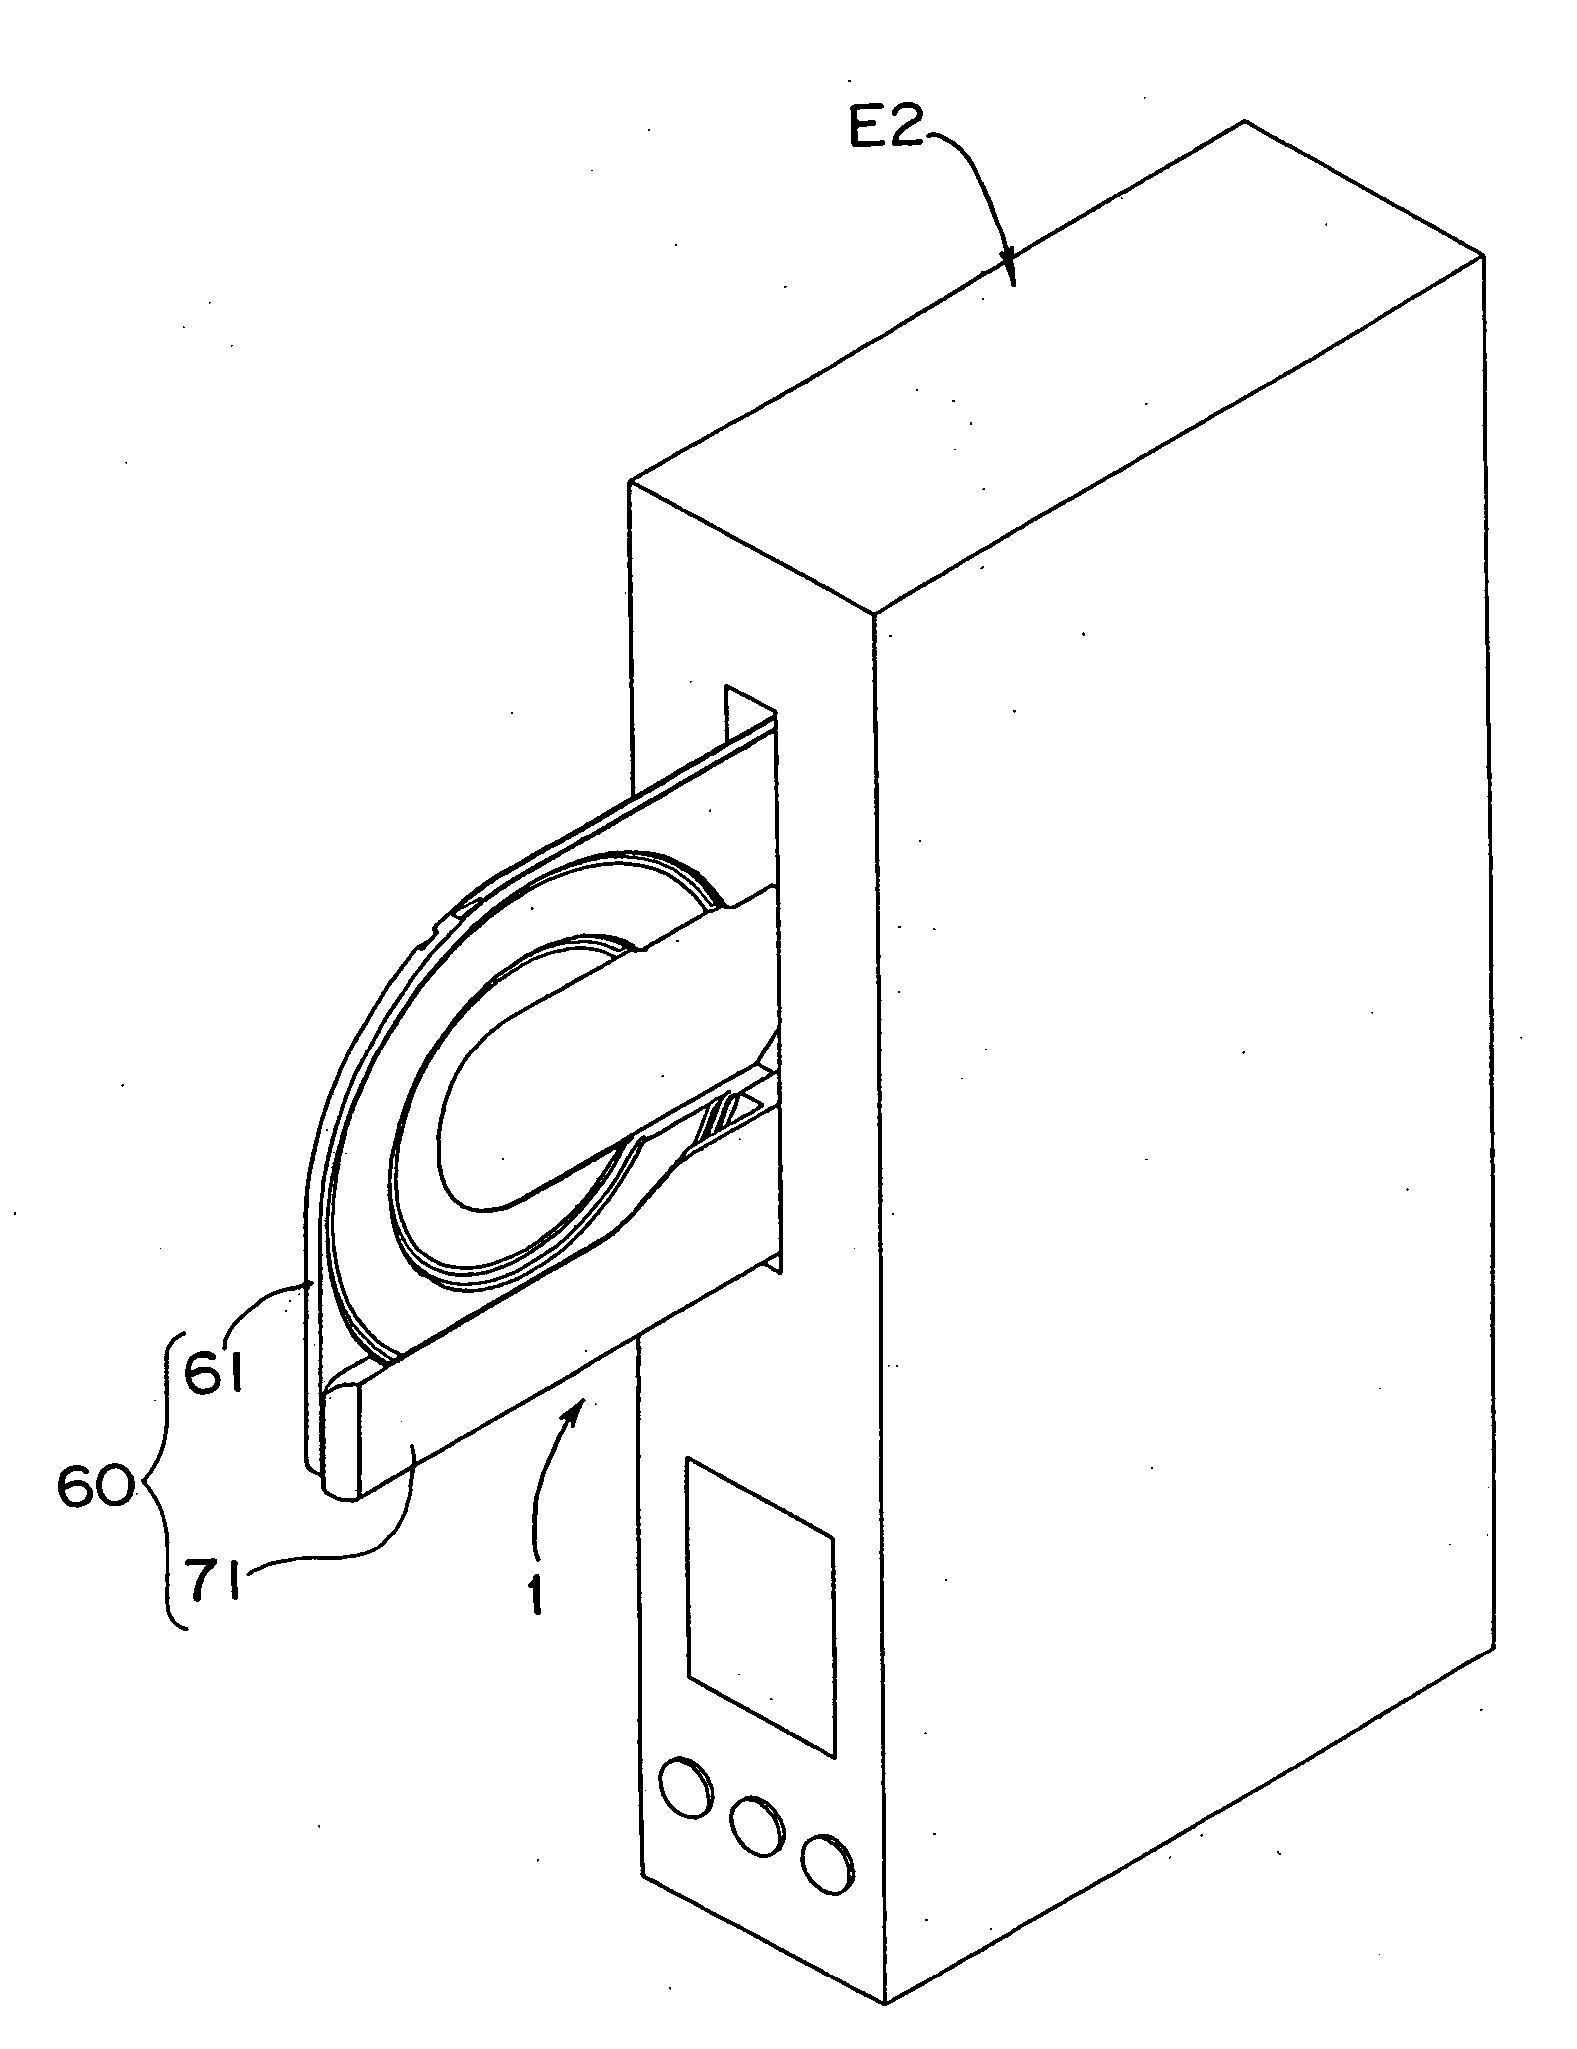 Disk convey apparatus